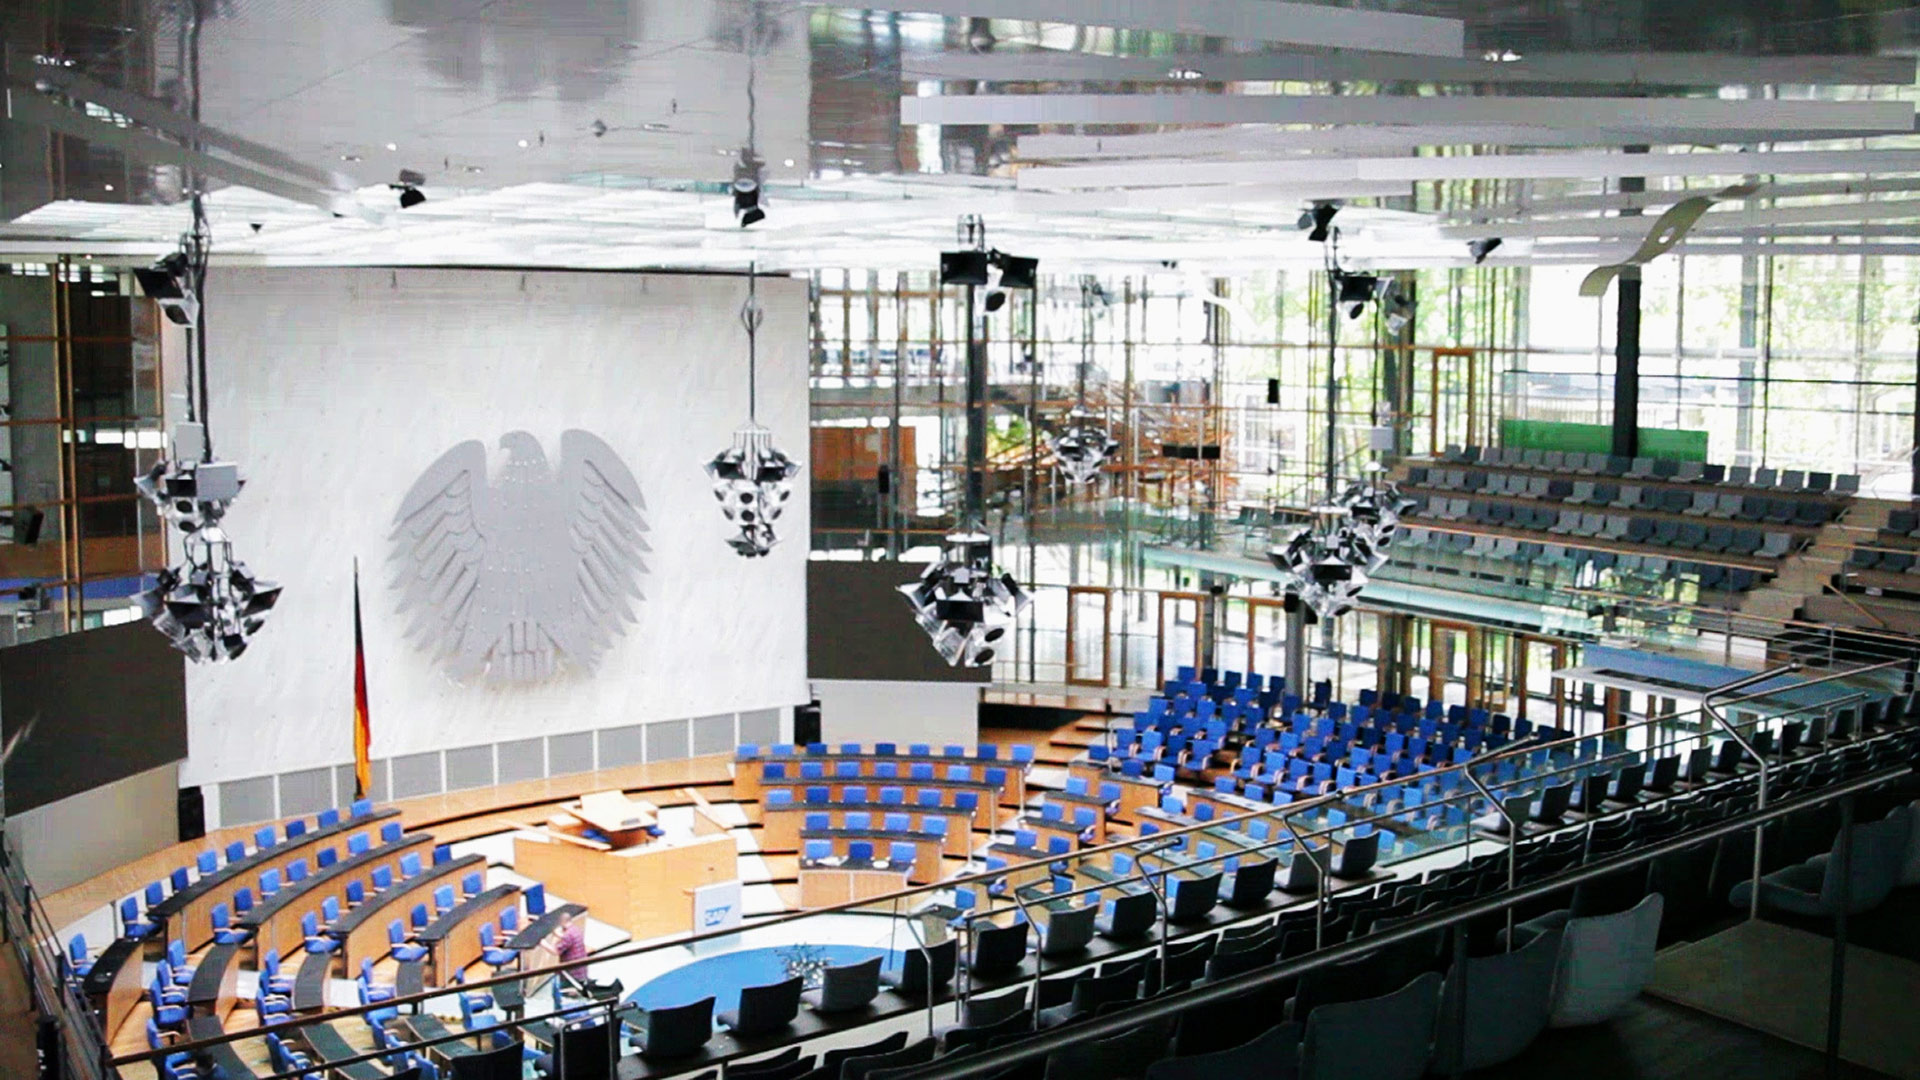 The Plenary Chamber of WCCB